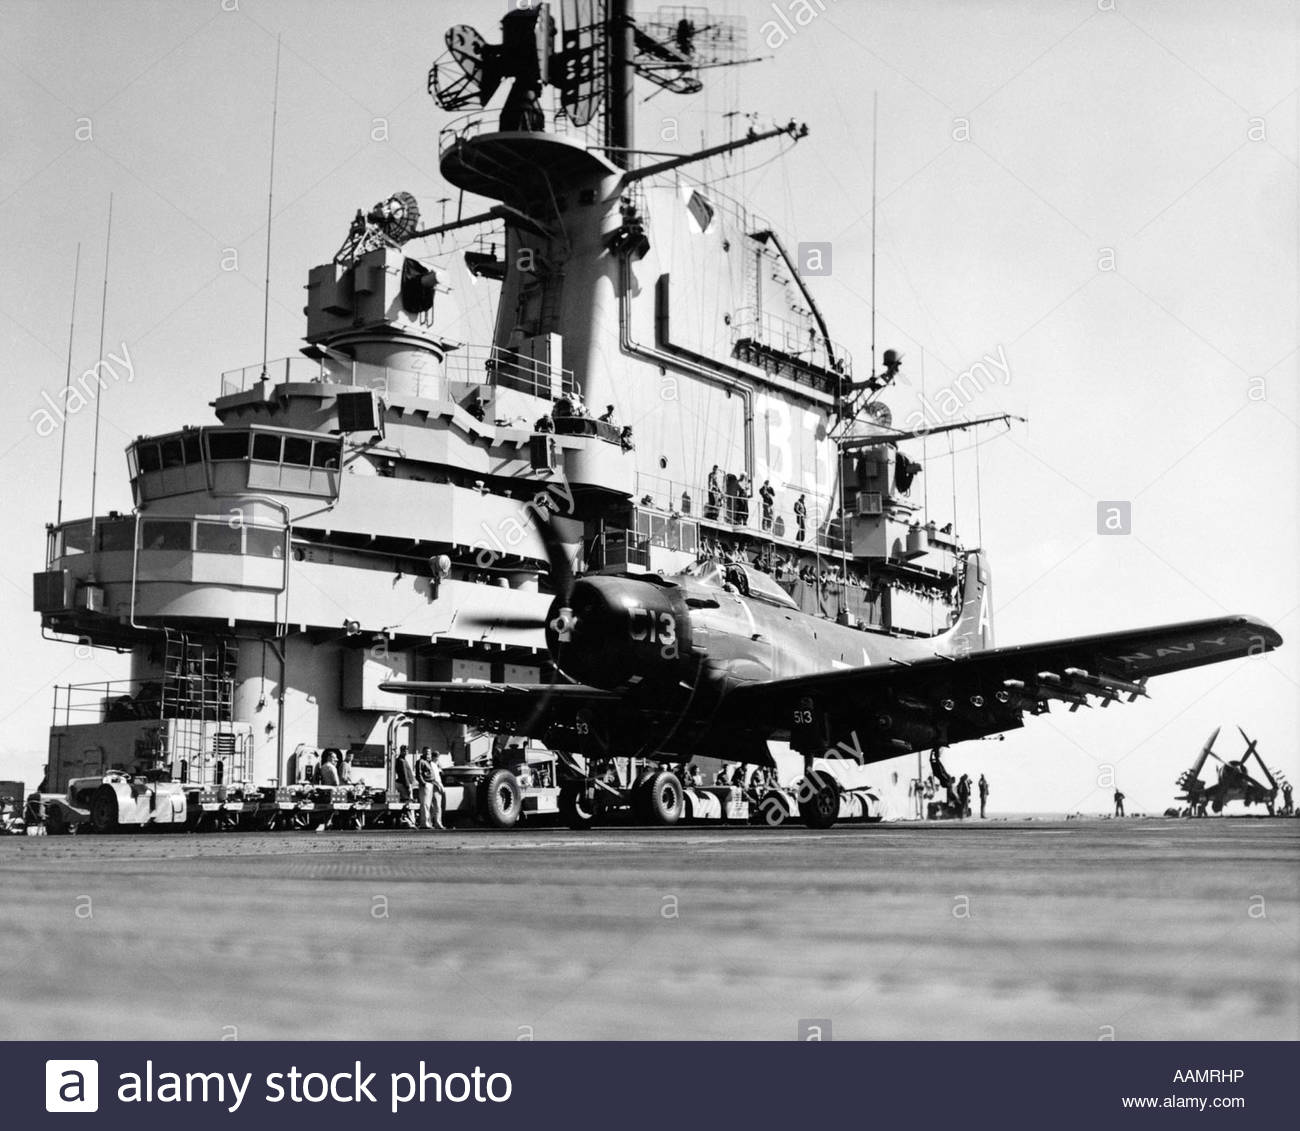 battleship clipart war ship